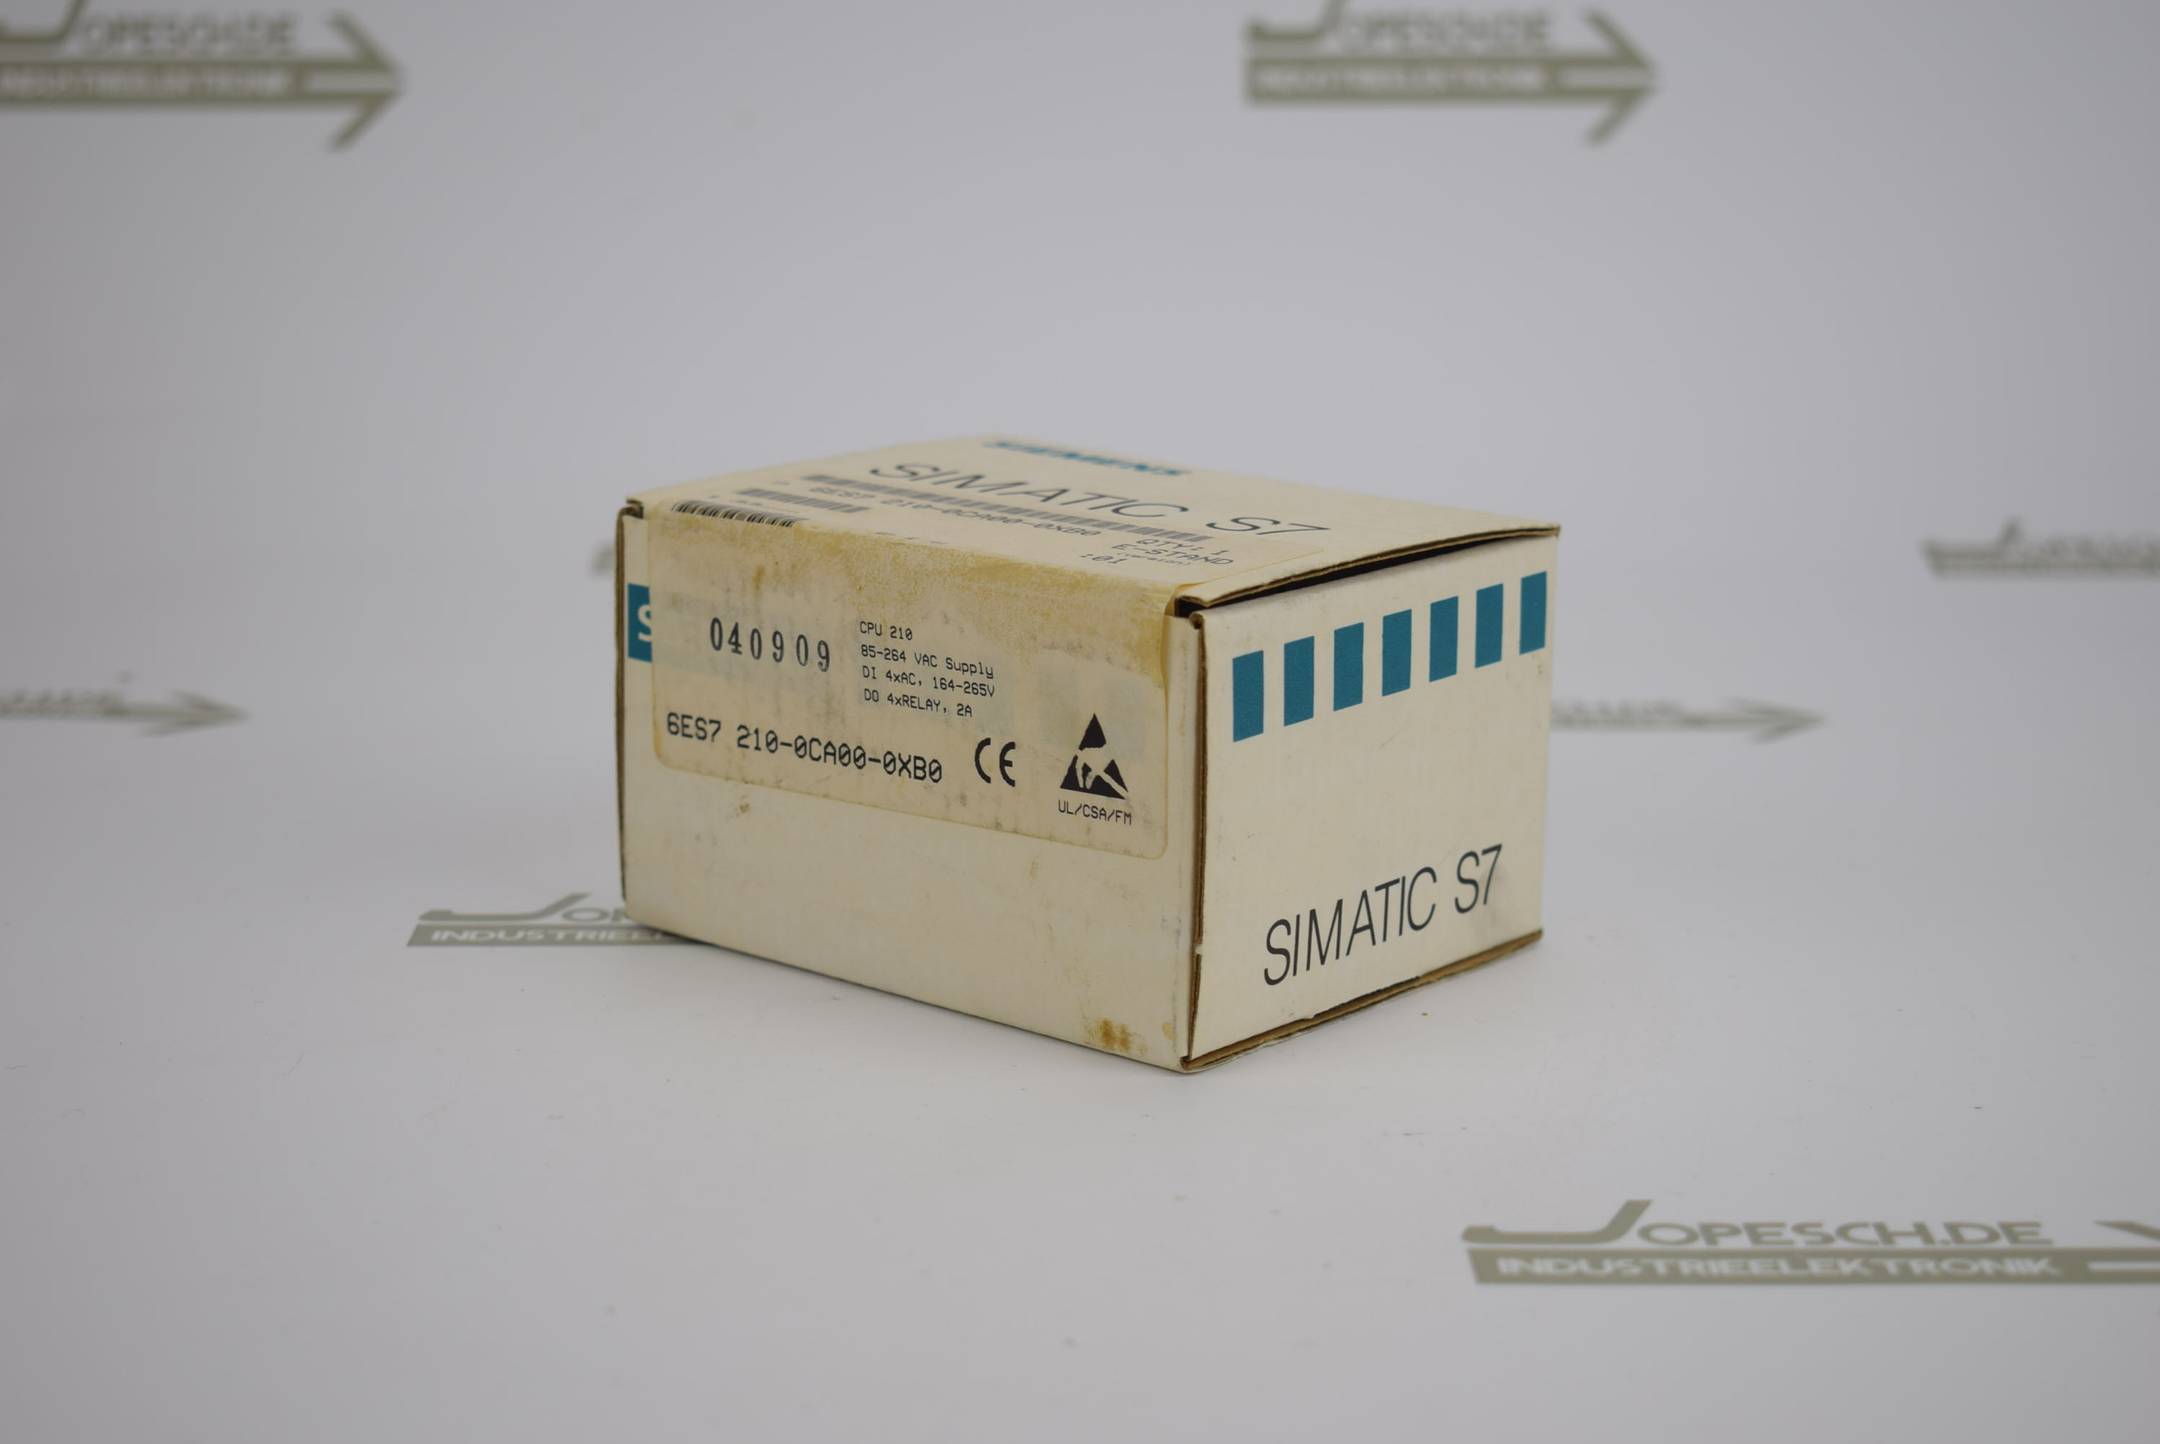 Siemens simatic S7-200 CPU 210 6ES7 210-0CA00-0XB0 ( 6ES7210-0CA00-0XB0 ) E1